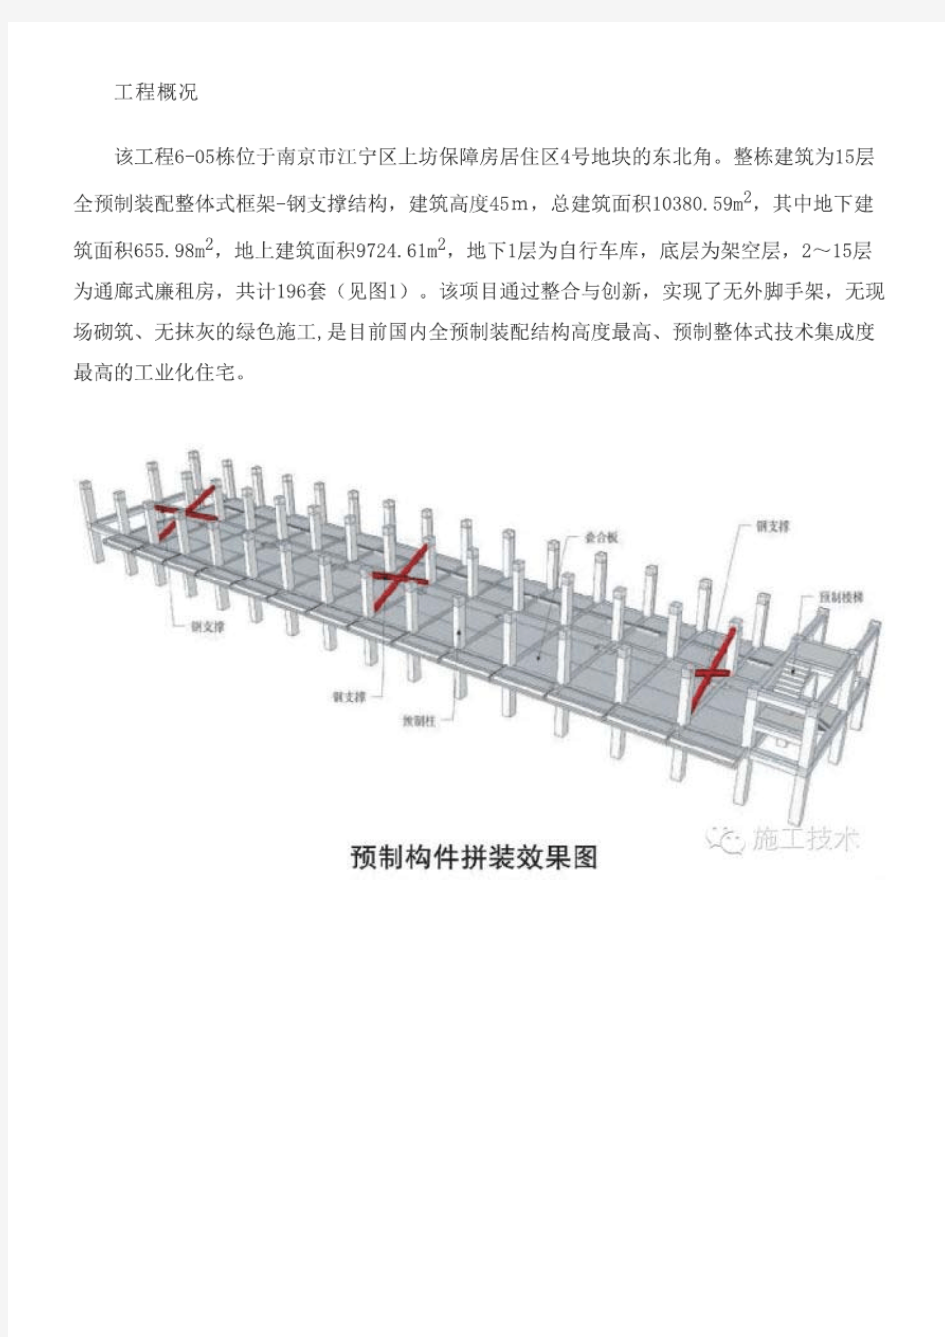 (图文)国内整体式技术集成度最高的工业化住宅——南京万科上坊保障房项目亮点